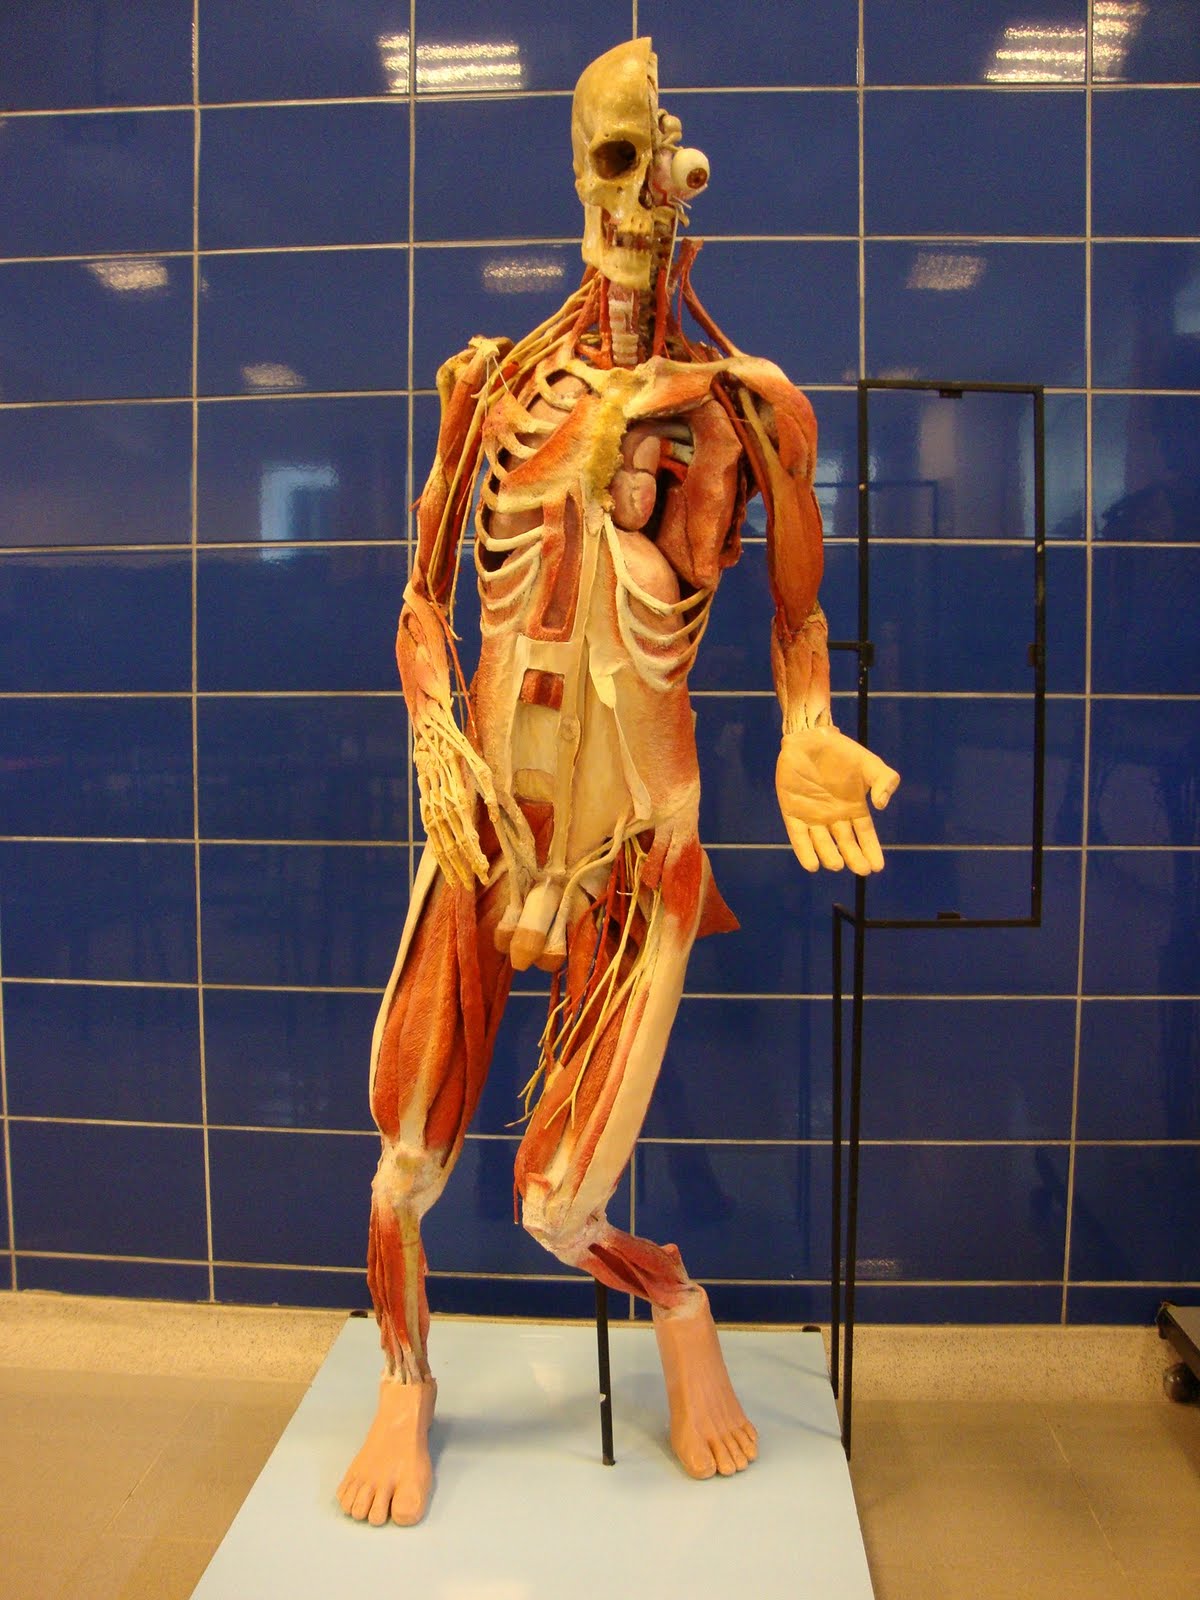 lockhart hamilton anatomia humana pdf